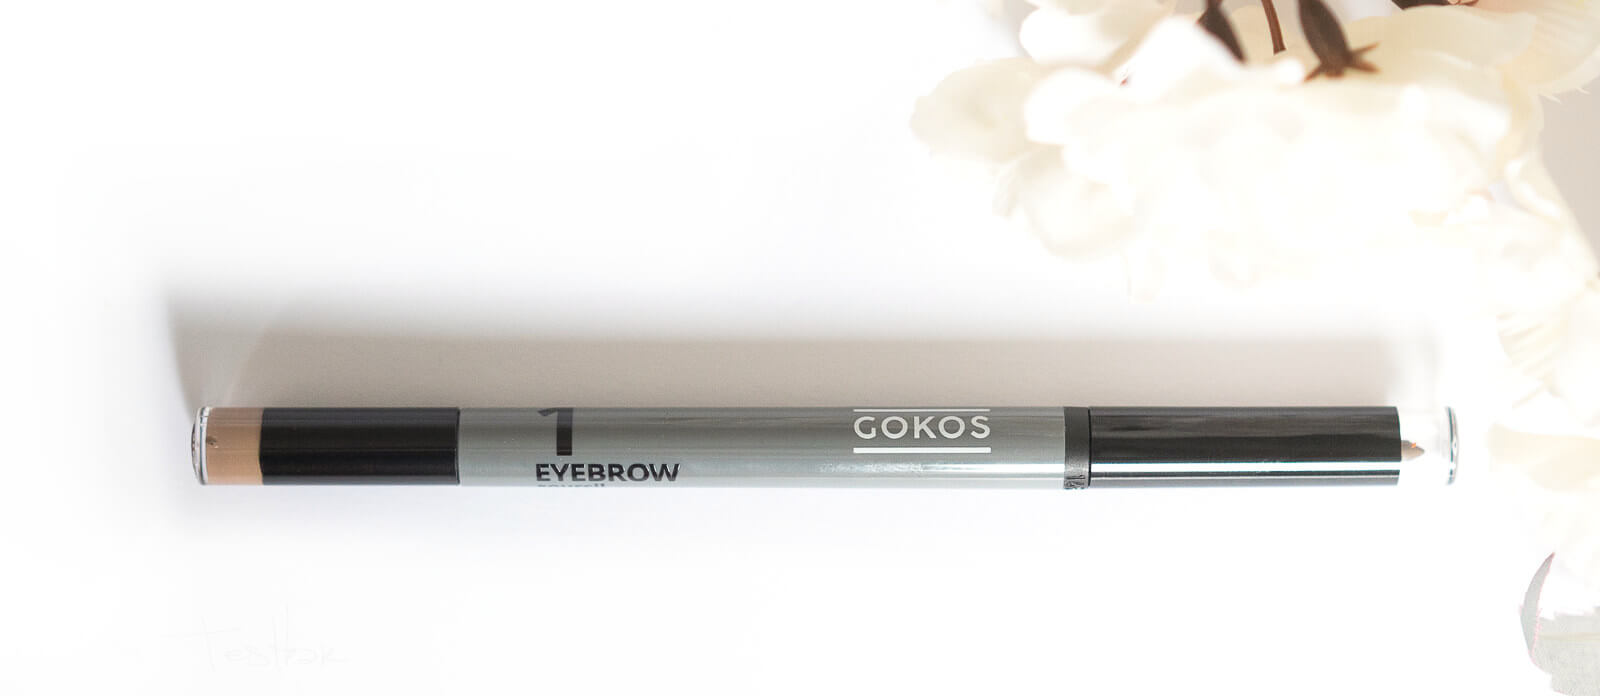 GOKOS - Beauty to go - Indie-Makeup-Brand mit Stiften 128